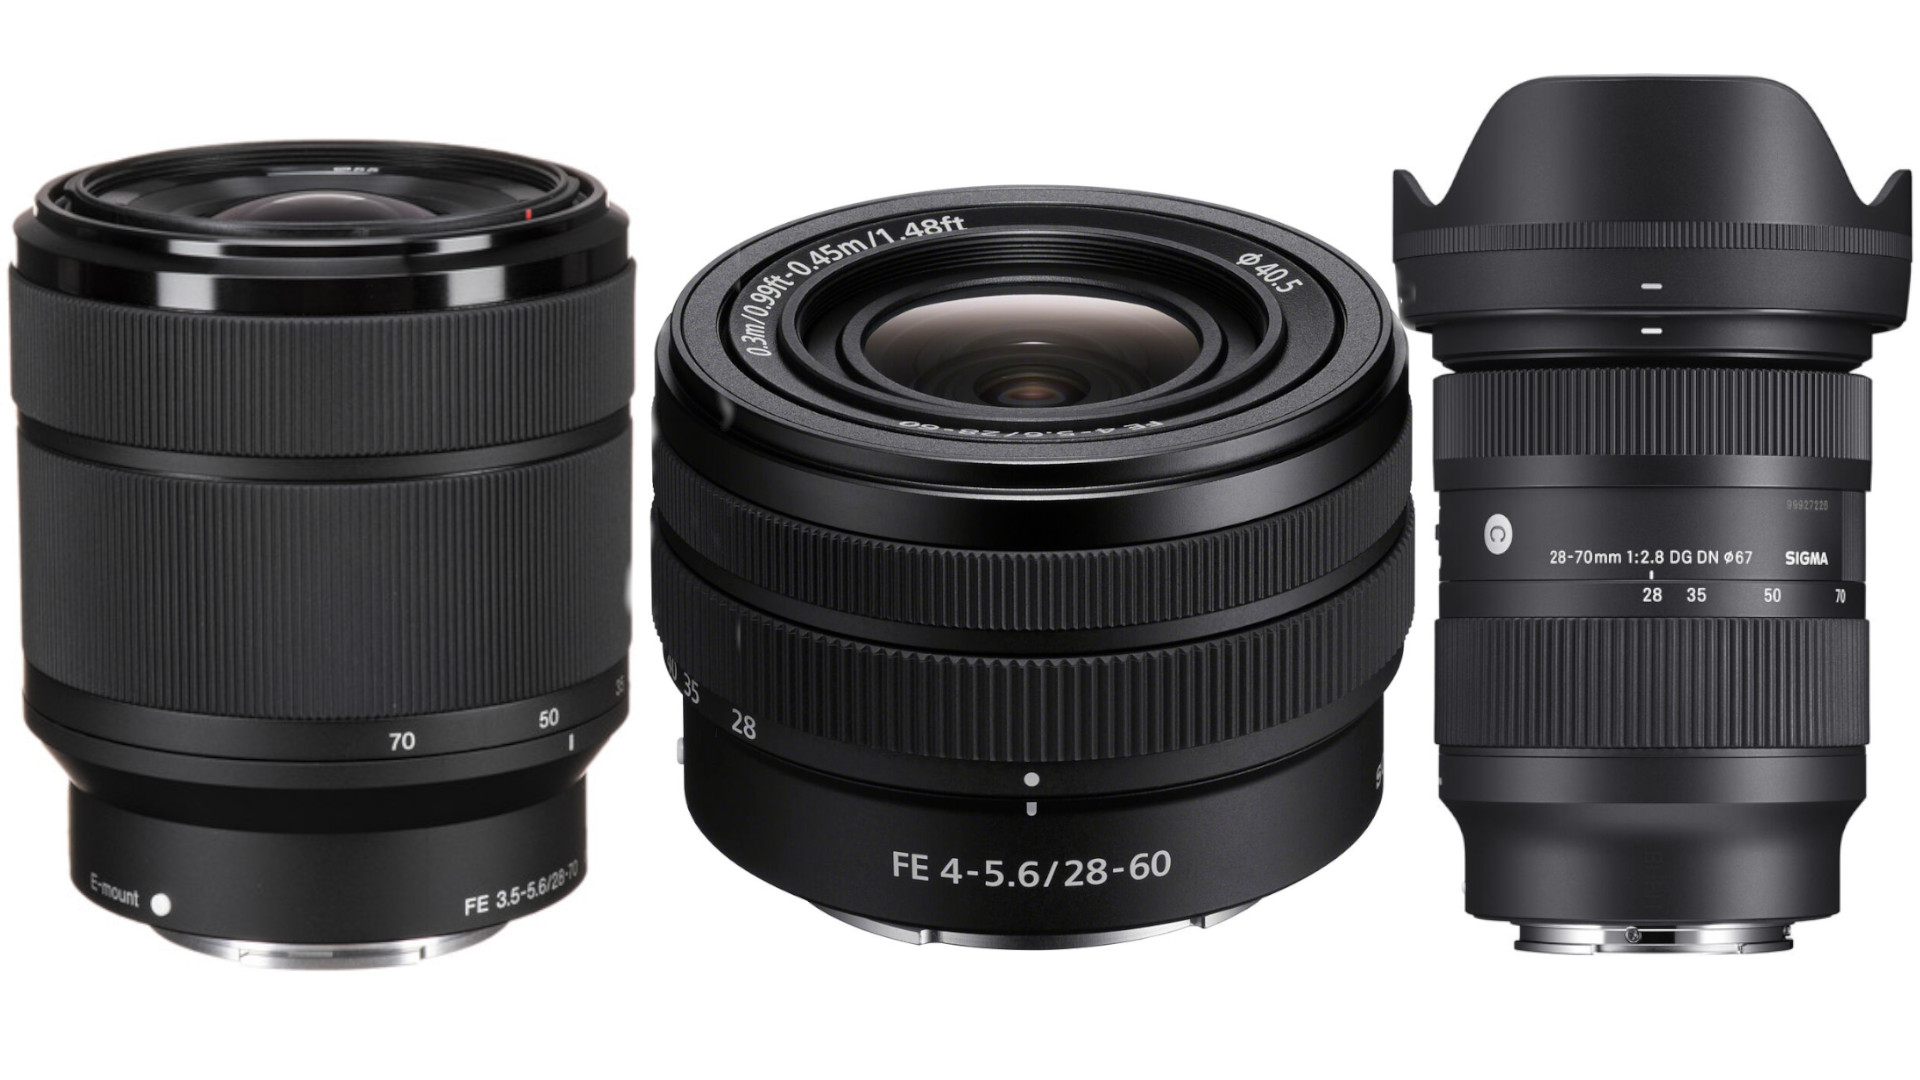 Sony FE 28-70mm f/3.5-5.6 OSS Lens for Video